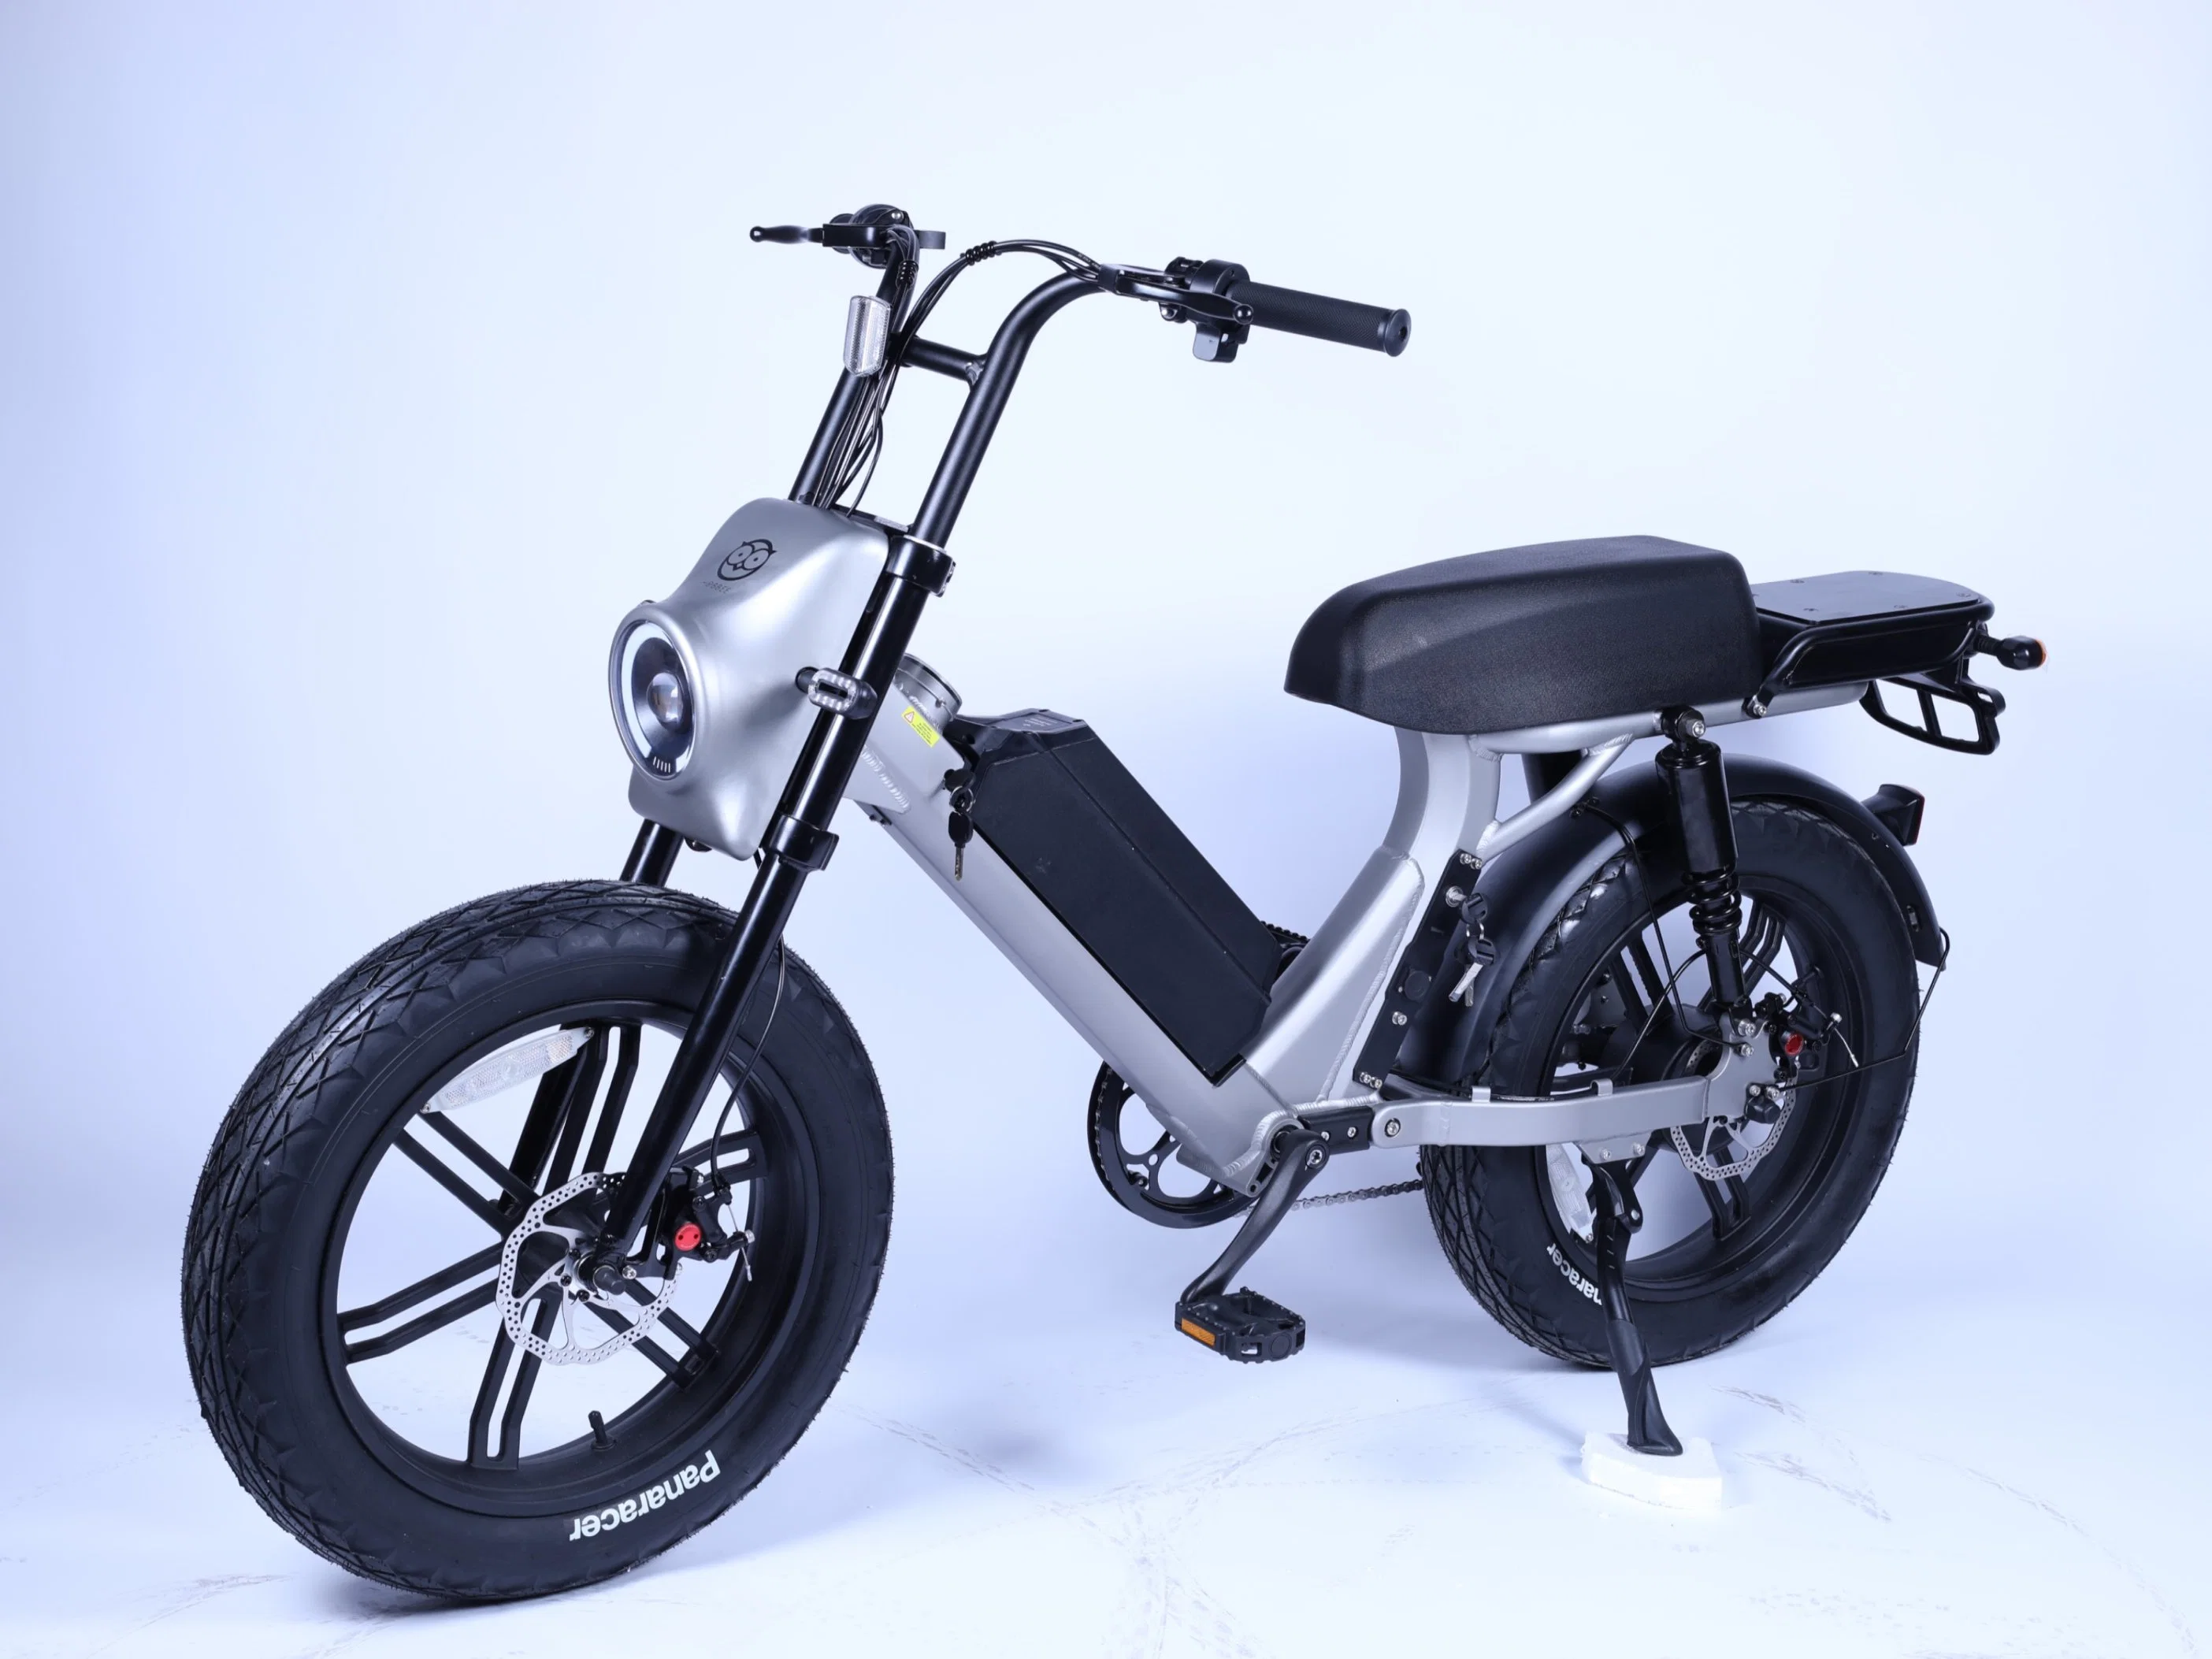 دراجة هوائية بالدراجة الهوائية بالدراجة الهوائية بالدراجة الهوائية بقدرة 52 فولت بقوة 1000 واط مع إطار الدهون بحجم 20 بوصة